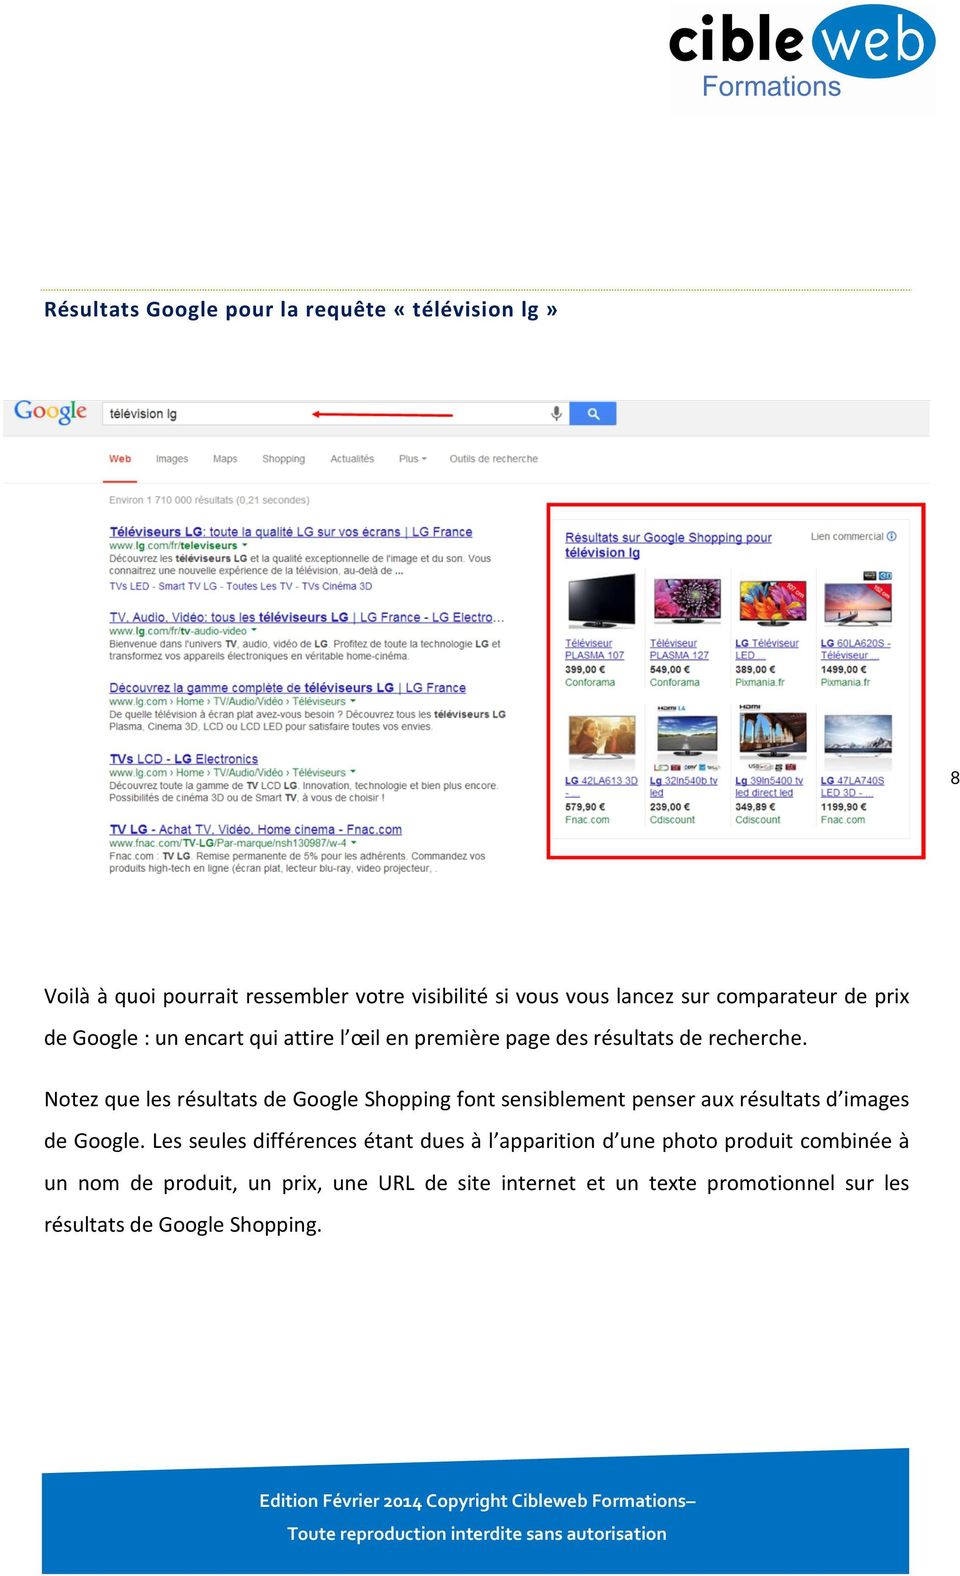 Notez que les résultats de Google Shopping font sensiblement penser aux résultats d images de Google.